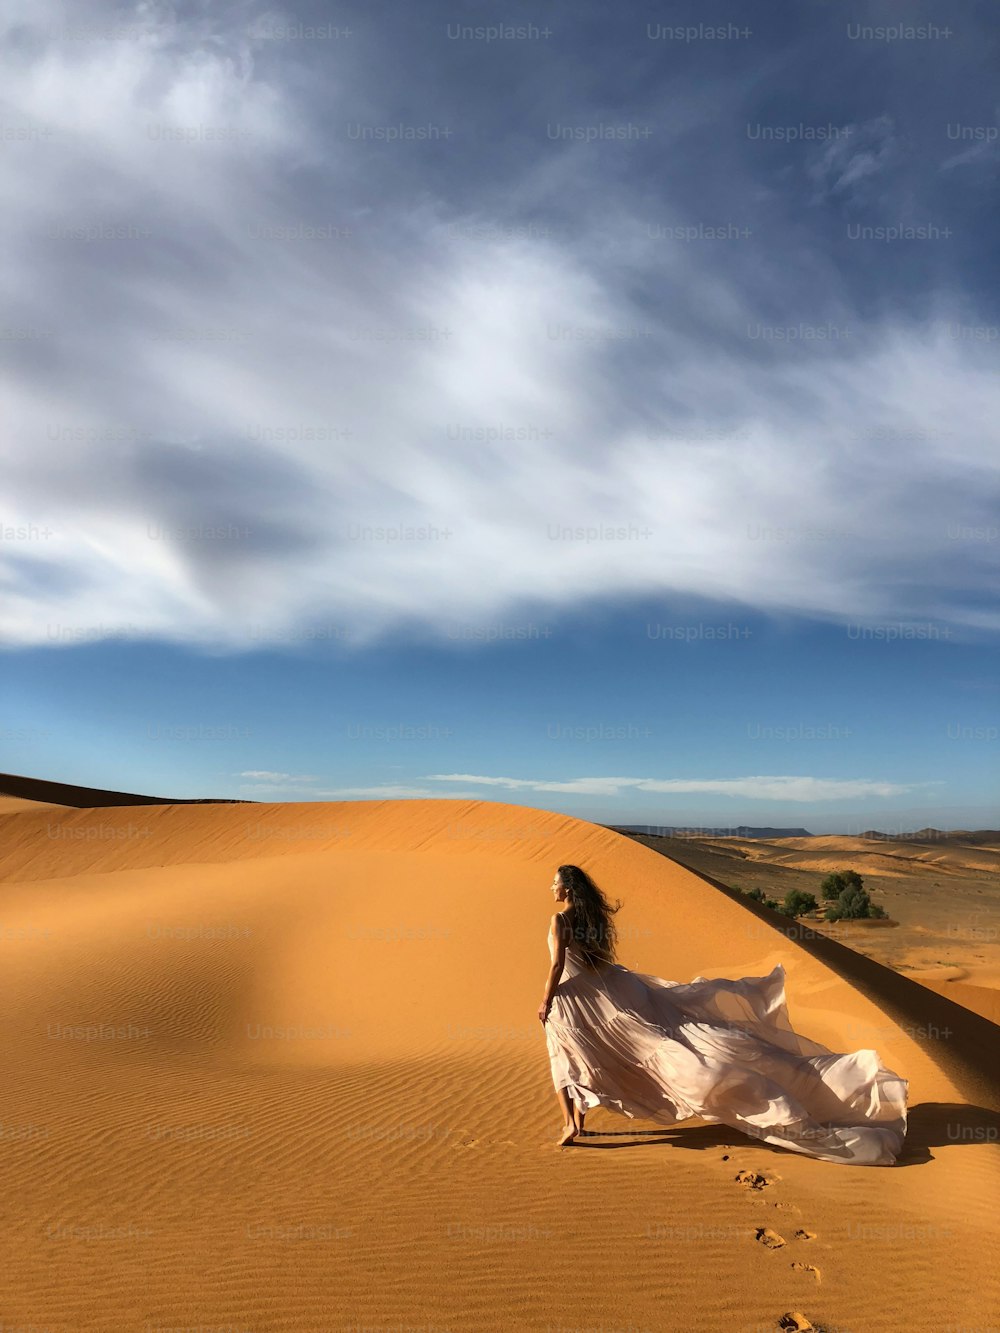 Frau in erstaunlichem Seidenbrautkleid mit fantastischem Blick auf die Sanddünen der Sahara im Sonnenuntergangslicht. Landschaft von Marokko, Afrika.